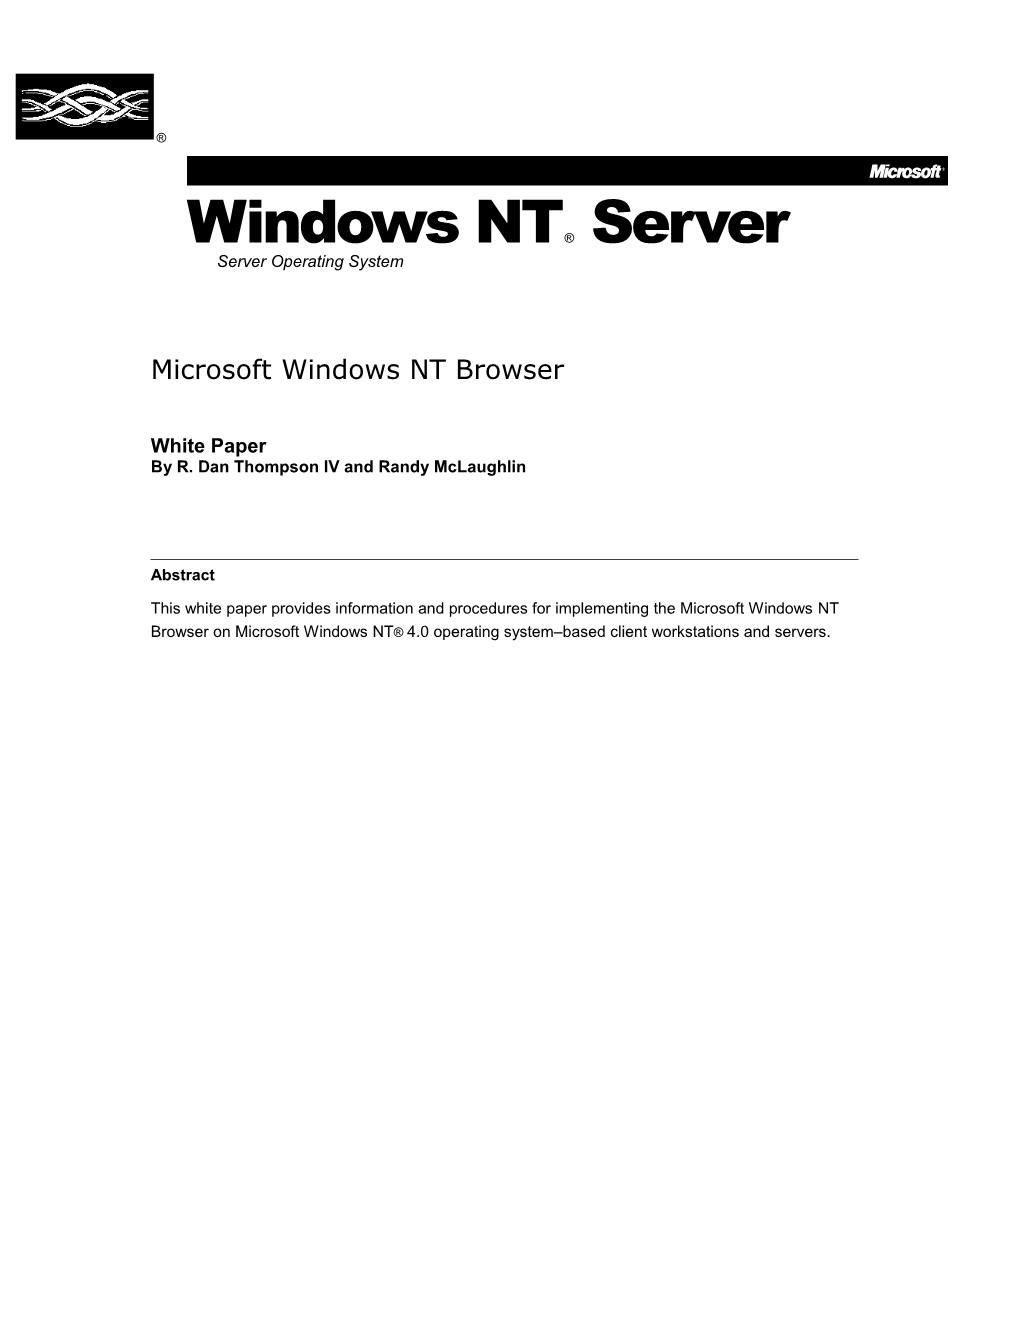 Windows NT Browser V.4.0